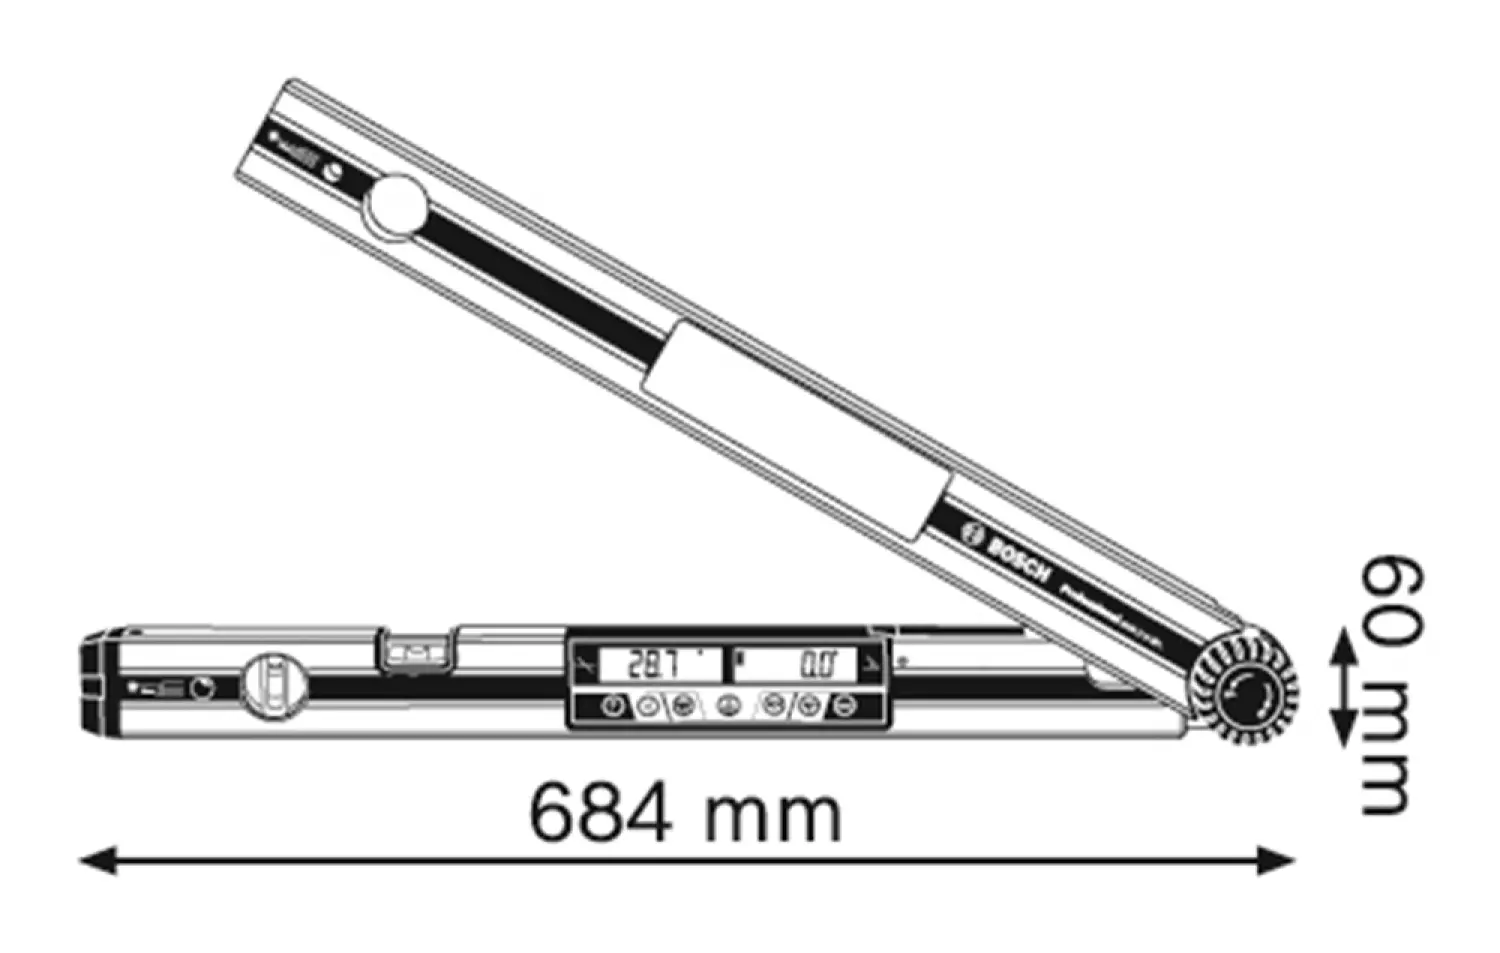 Bosch GAM 270 MFL mesureur d'angle numérique en sac - 270-image